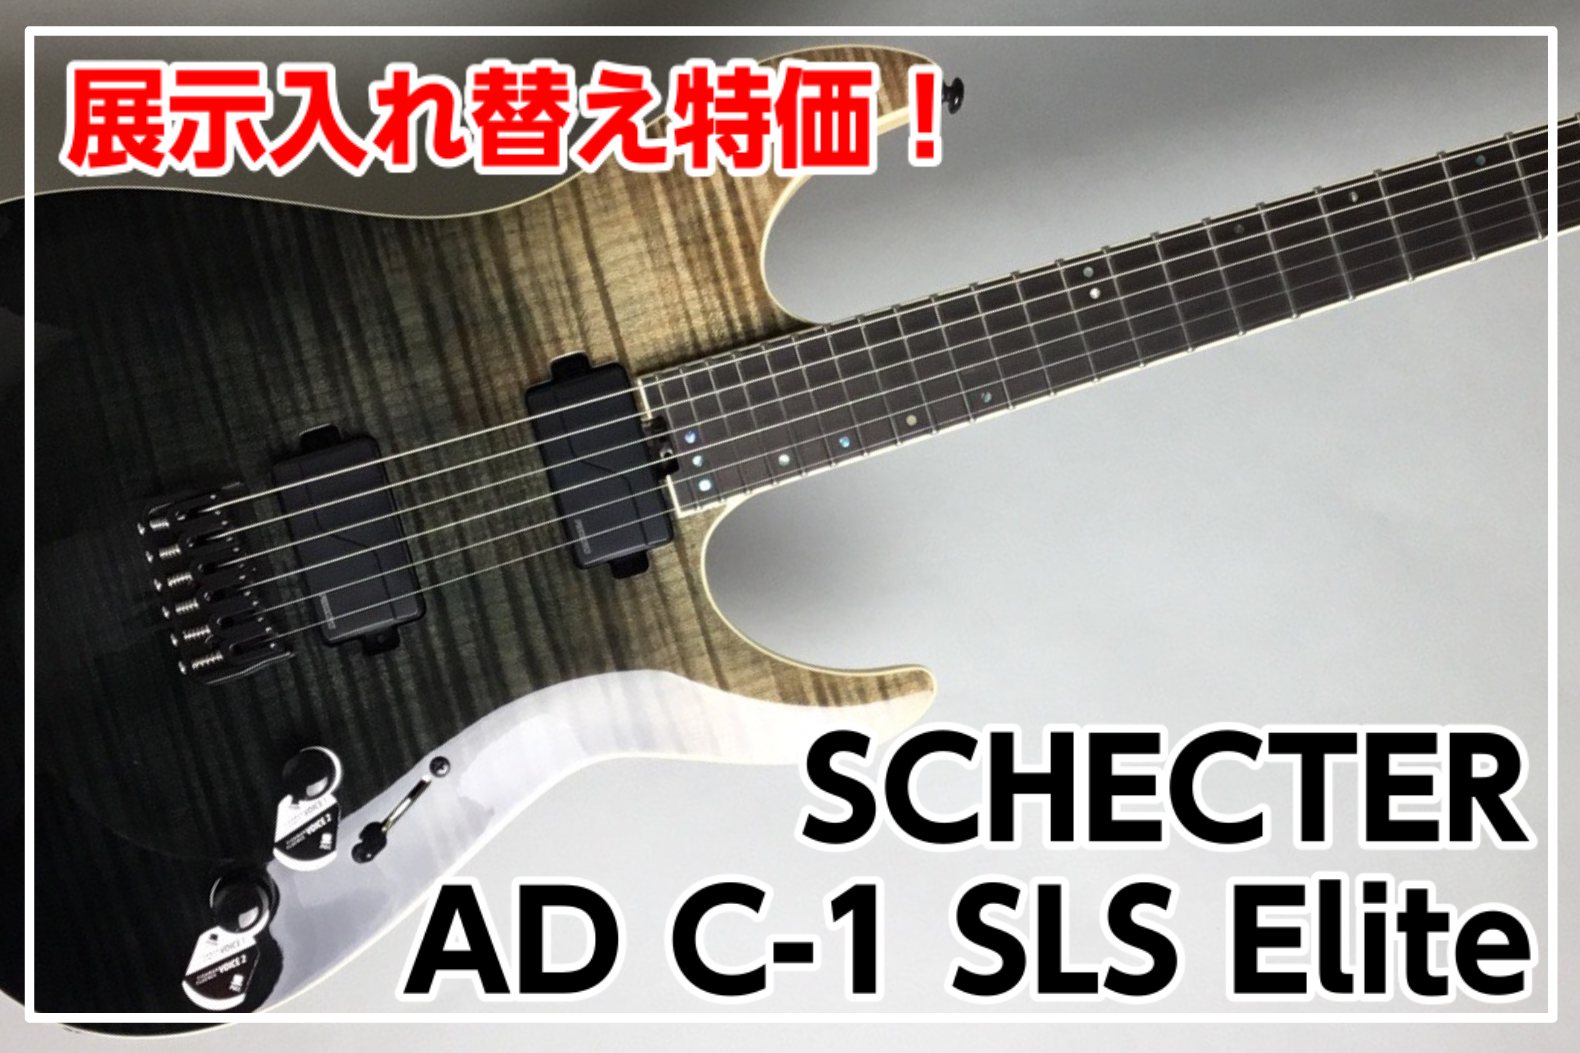 【新品特価】SCHECTER AD-C-1-SLS Elite 展示入れ替えの為特価!!